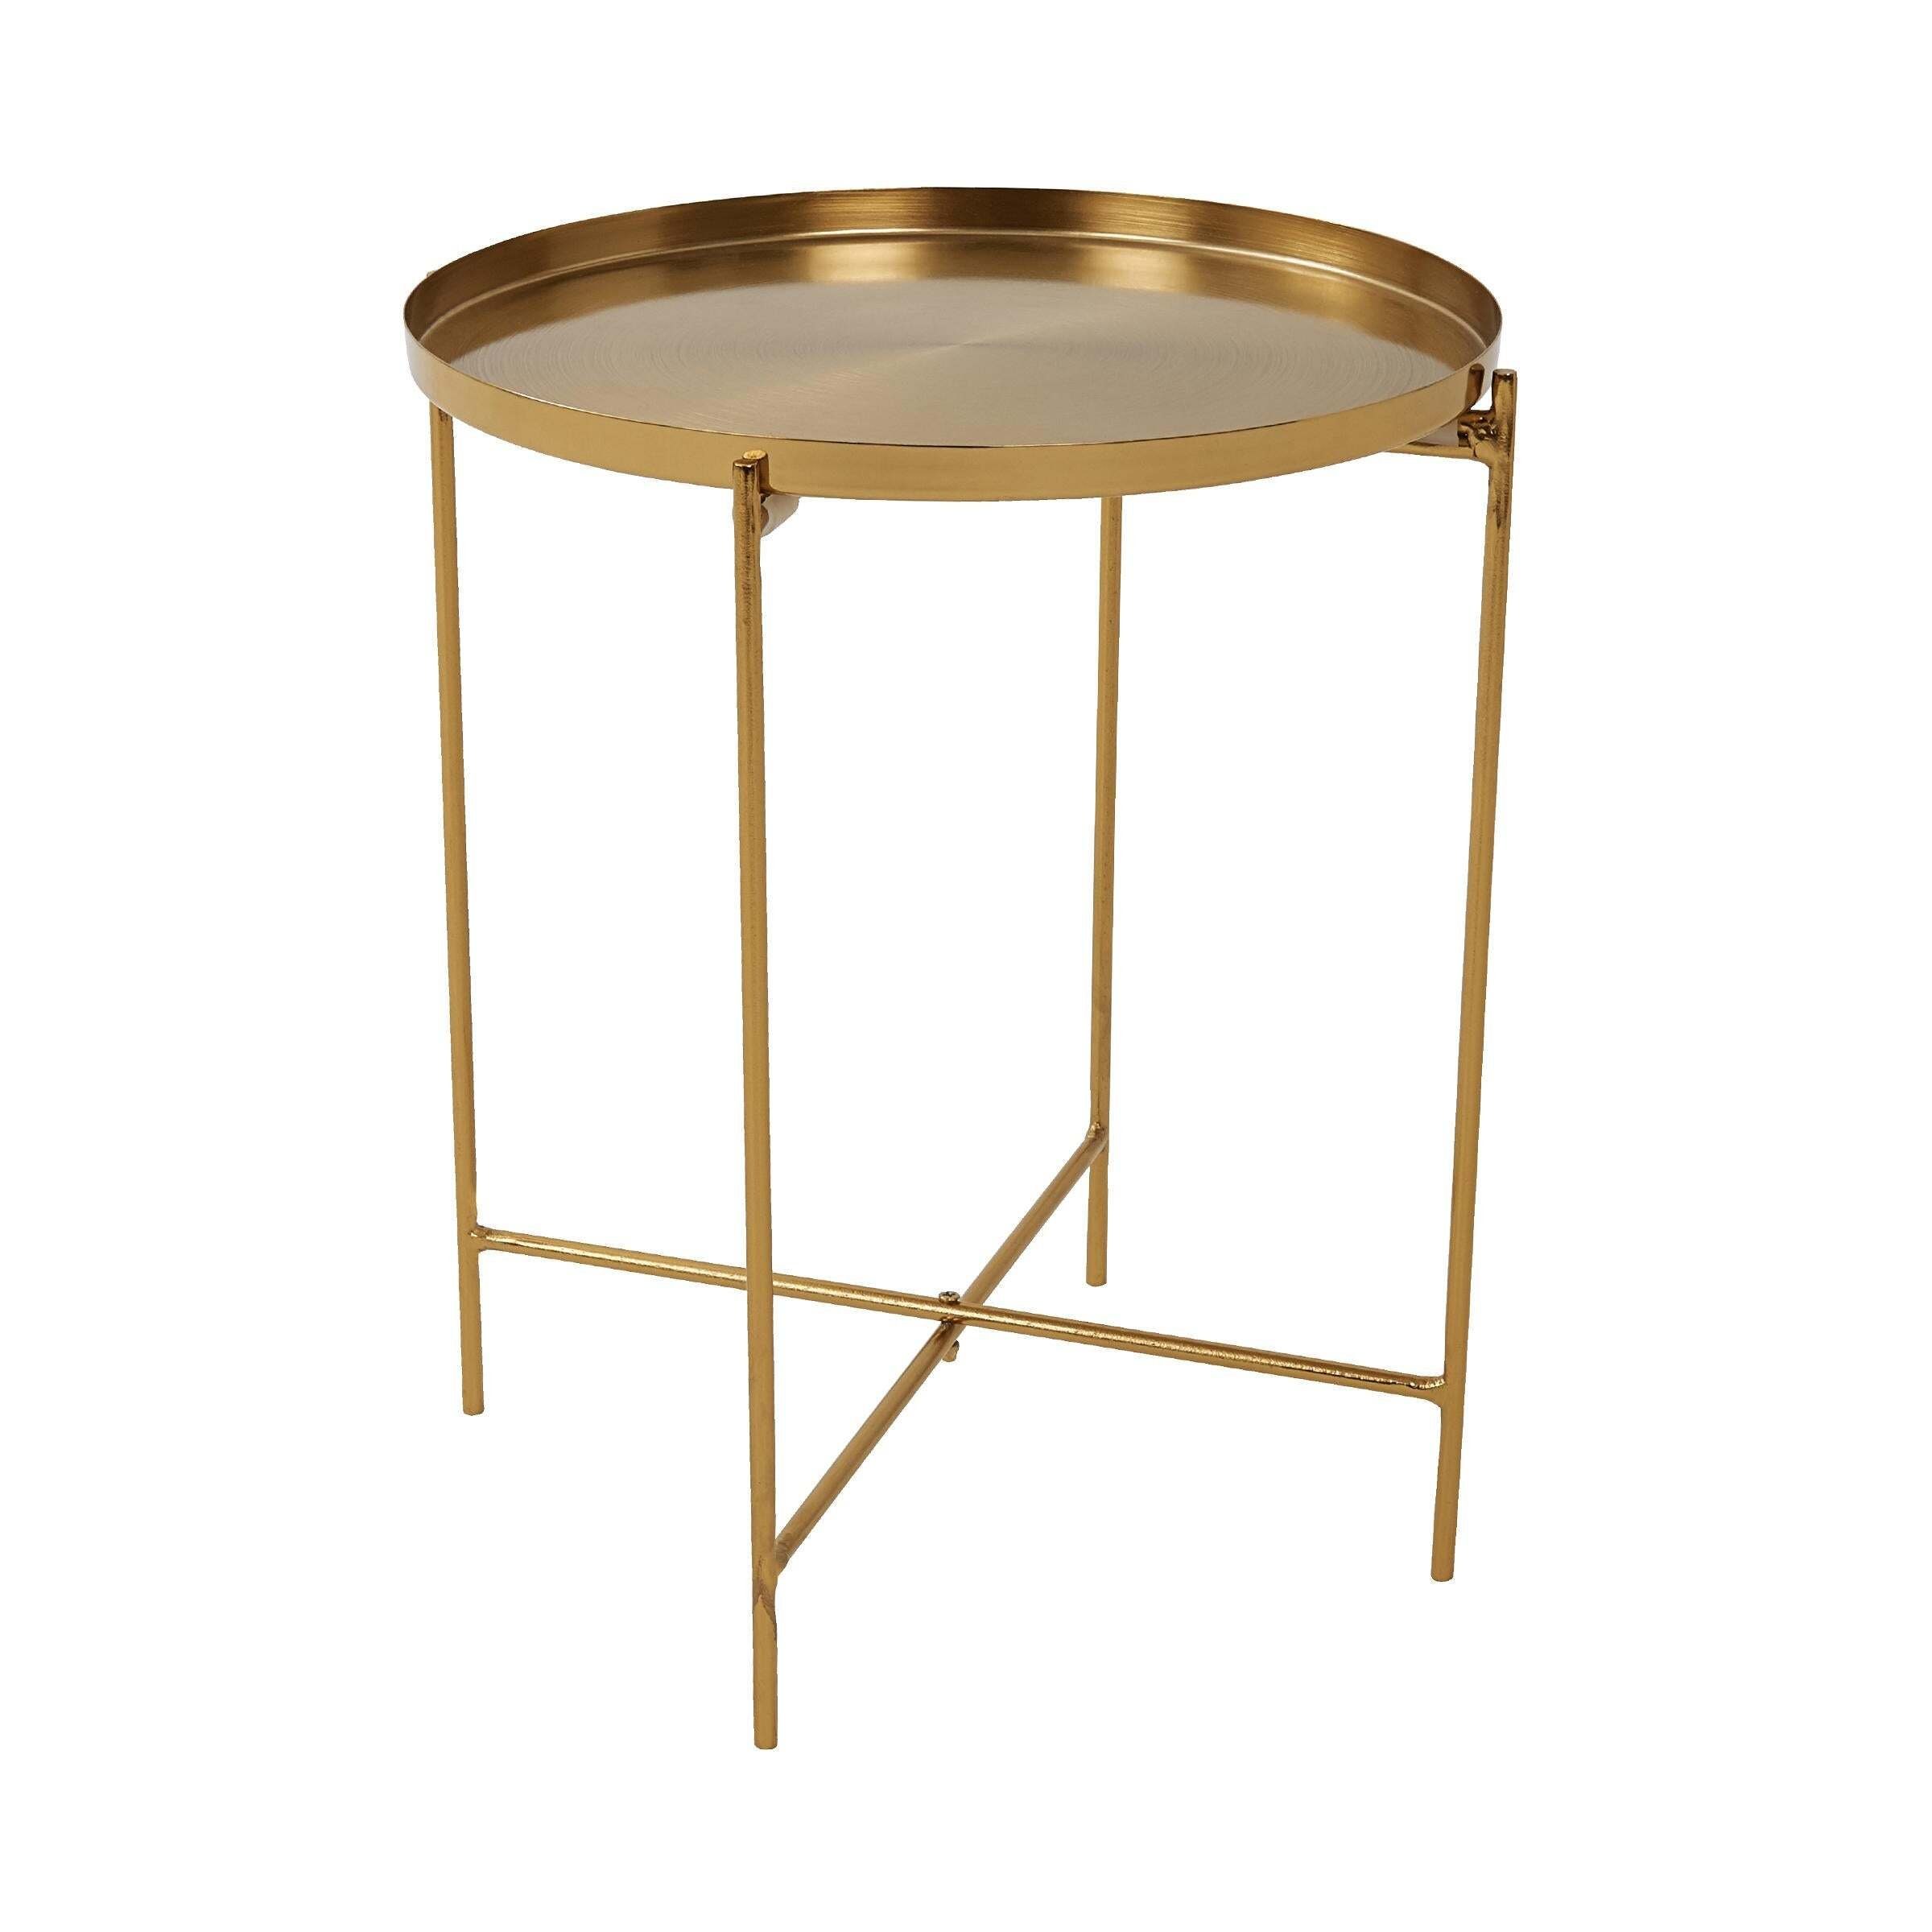 BUTLERS Beistelltisch AURIA Beistelltisch, goldener Tisch Höhe 40cm - Abstelltisch aus gebürstetem Metall